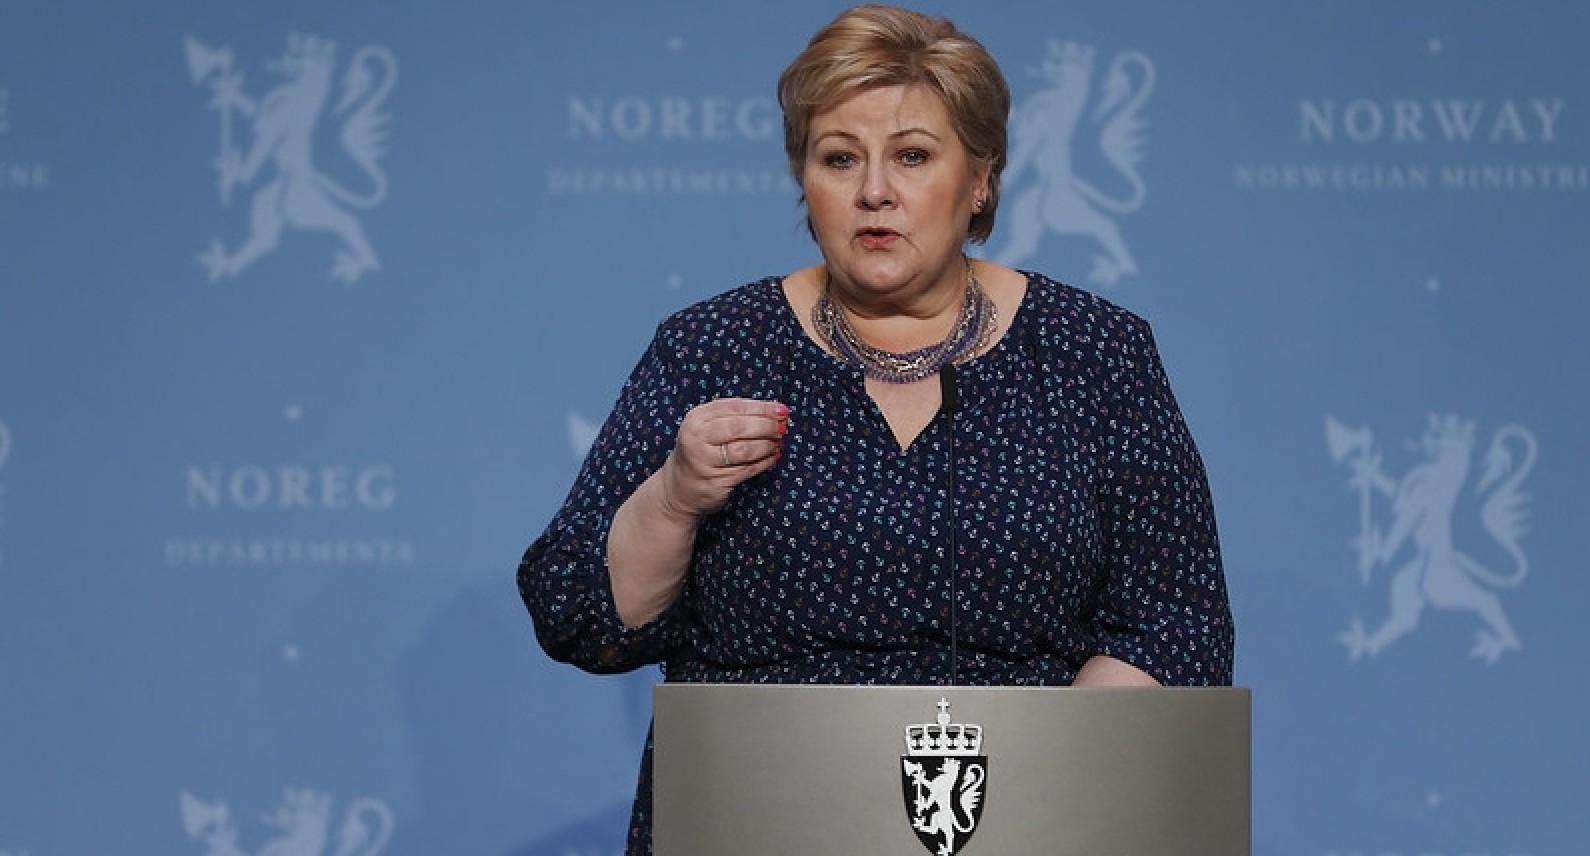 Krajowe obostrzenia przedłużone do 14 kwietnia. Premier przedstawi plan otwarcia Norwegii